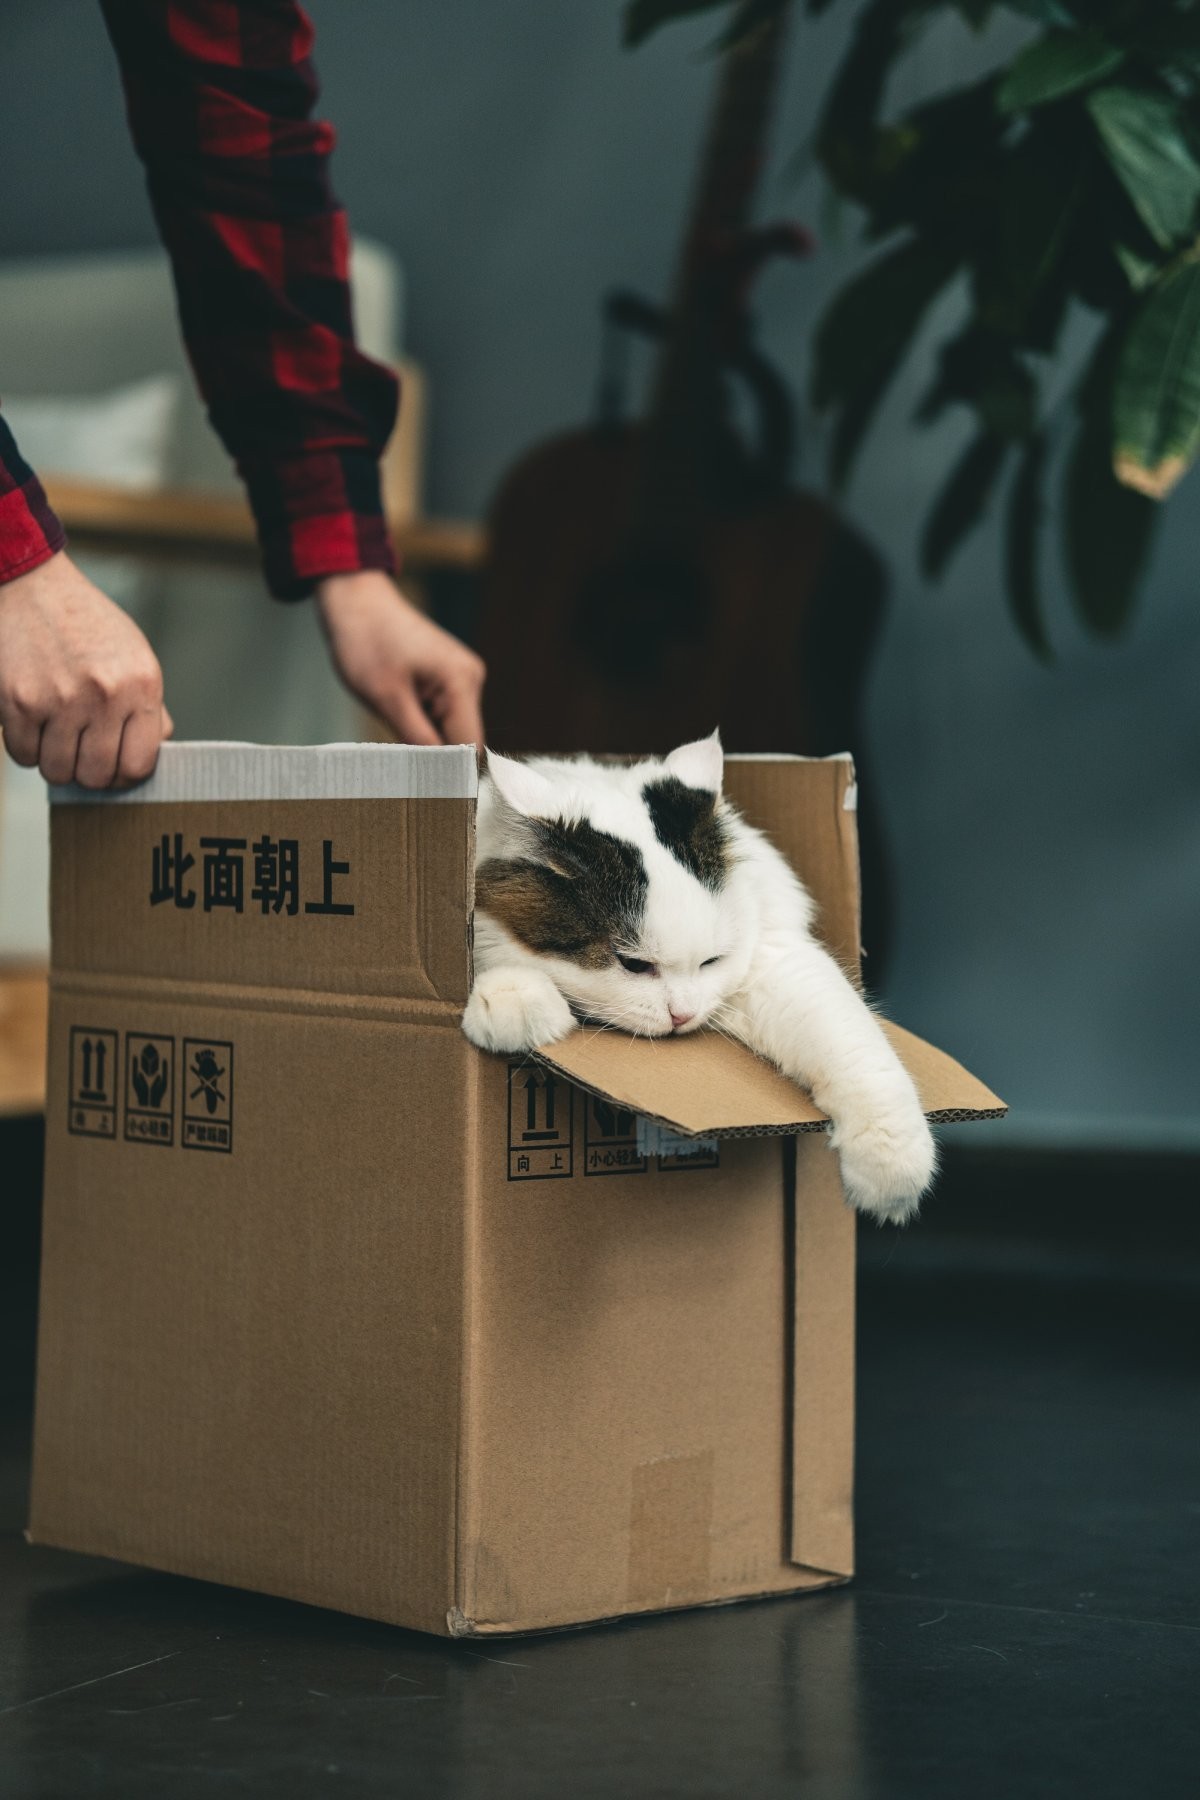 Mudanças de rotina e acontecimentos estressantes podem deixar o gato mais vulnerável à síndrome de Pandora (Foto: Unsplash/ Jiawei Zhao/ CreativeCommons)